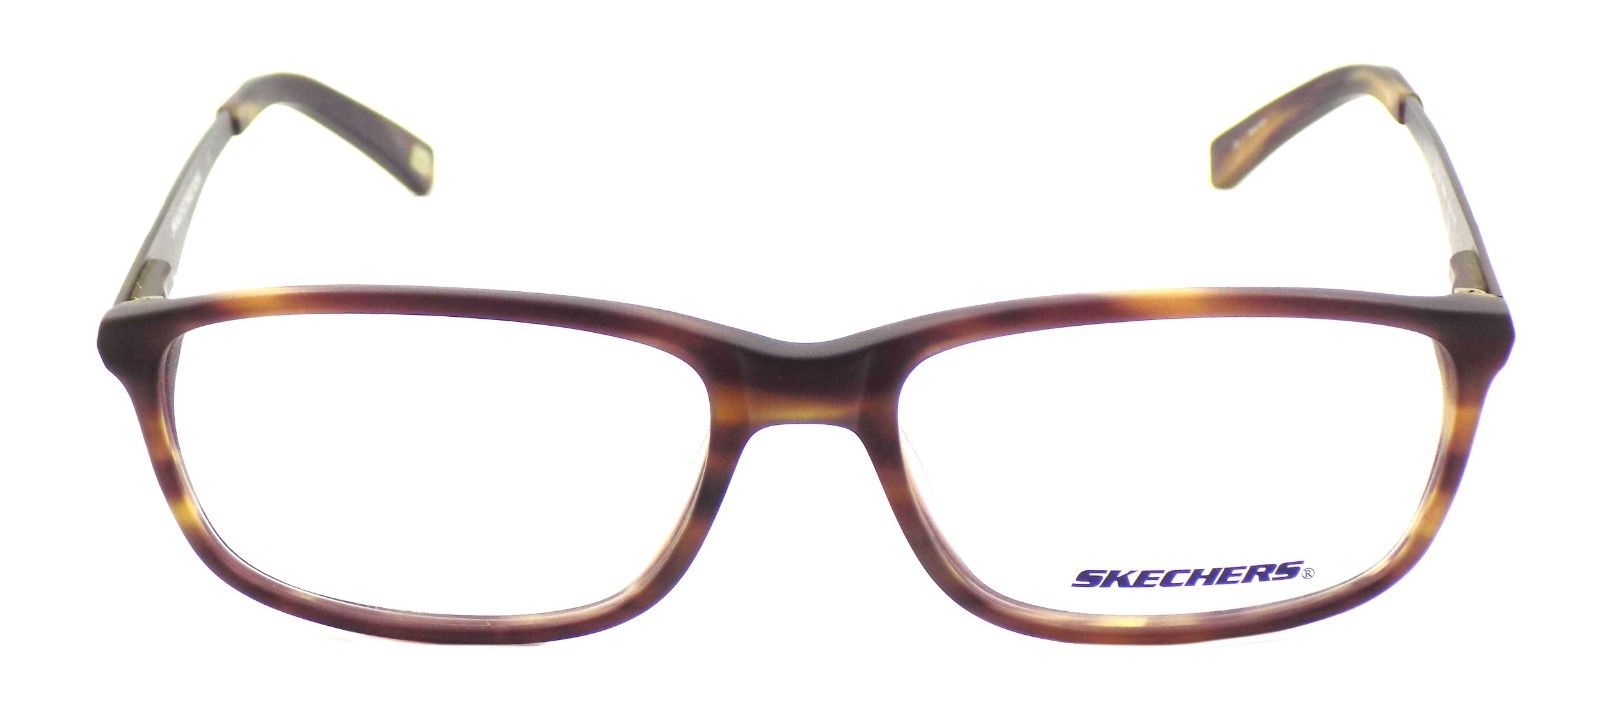 2-SKECHERS SK 3128 MBRN Men's Eyeglasses Frames 55-16-145 Matte Brown + CASE-715583032521-IKSpecs